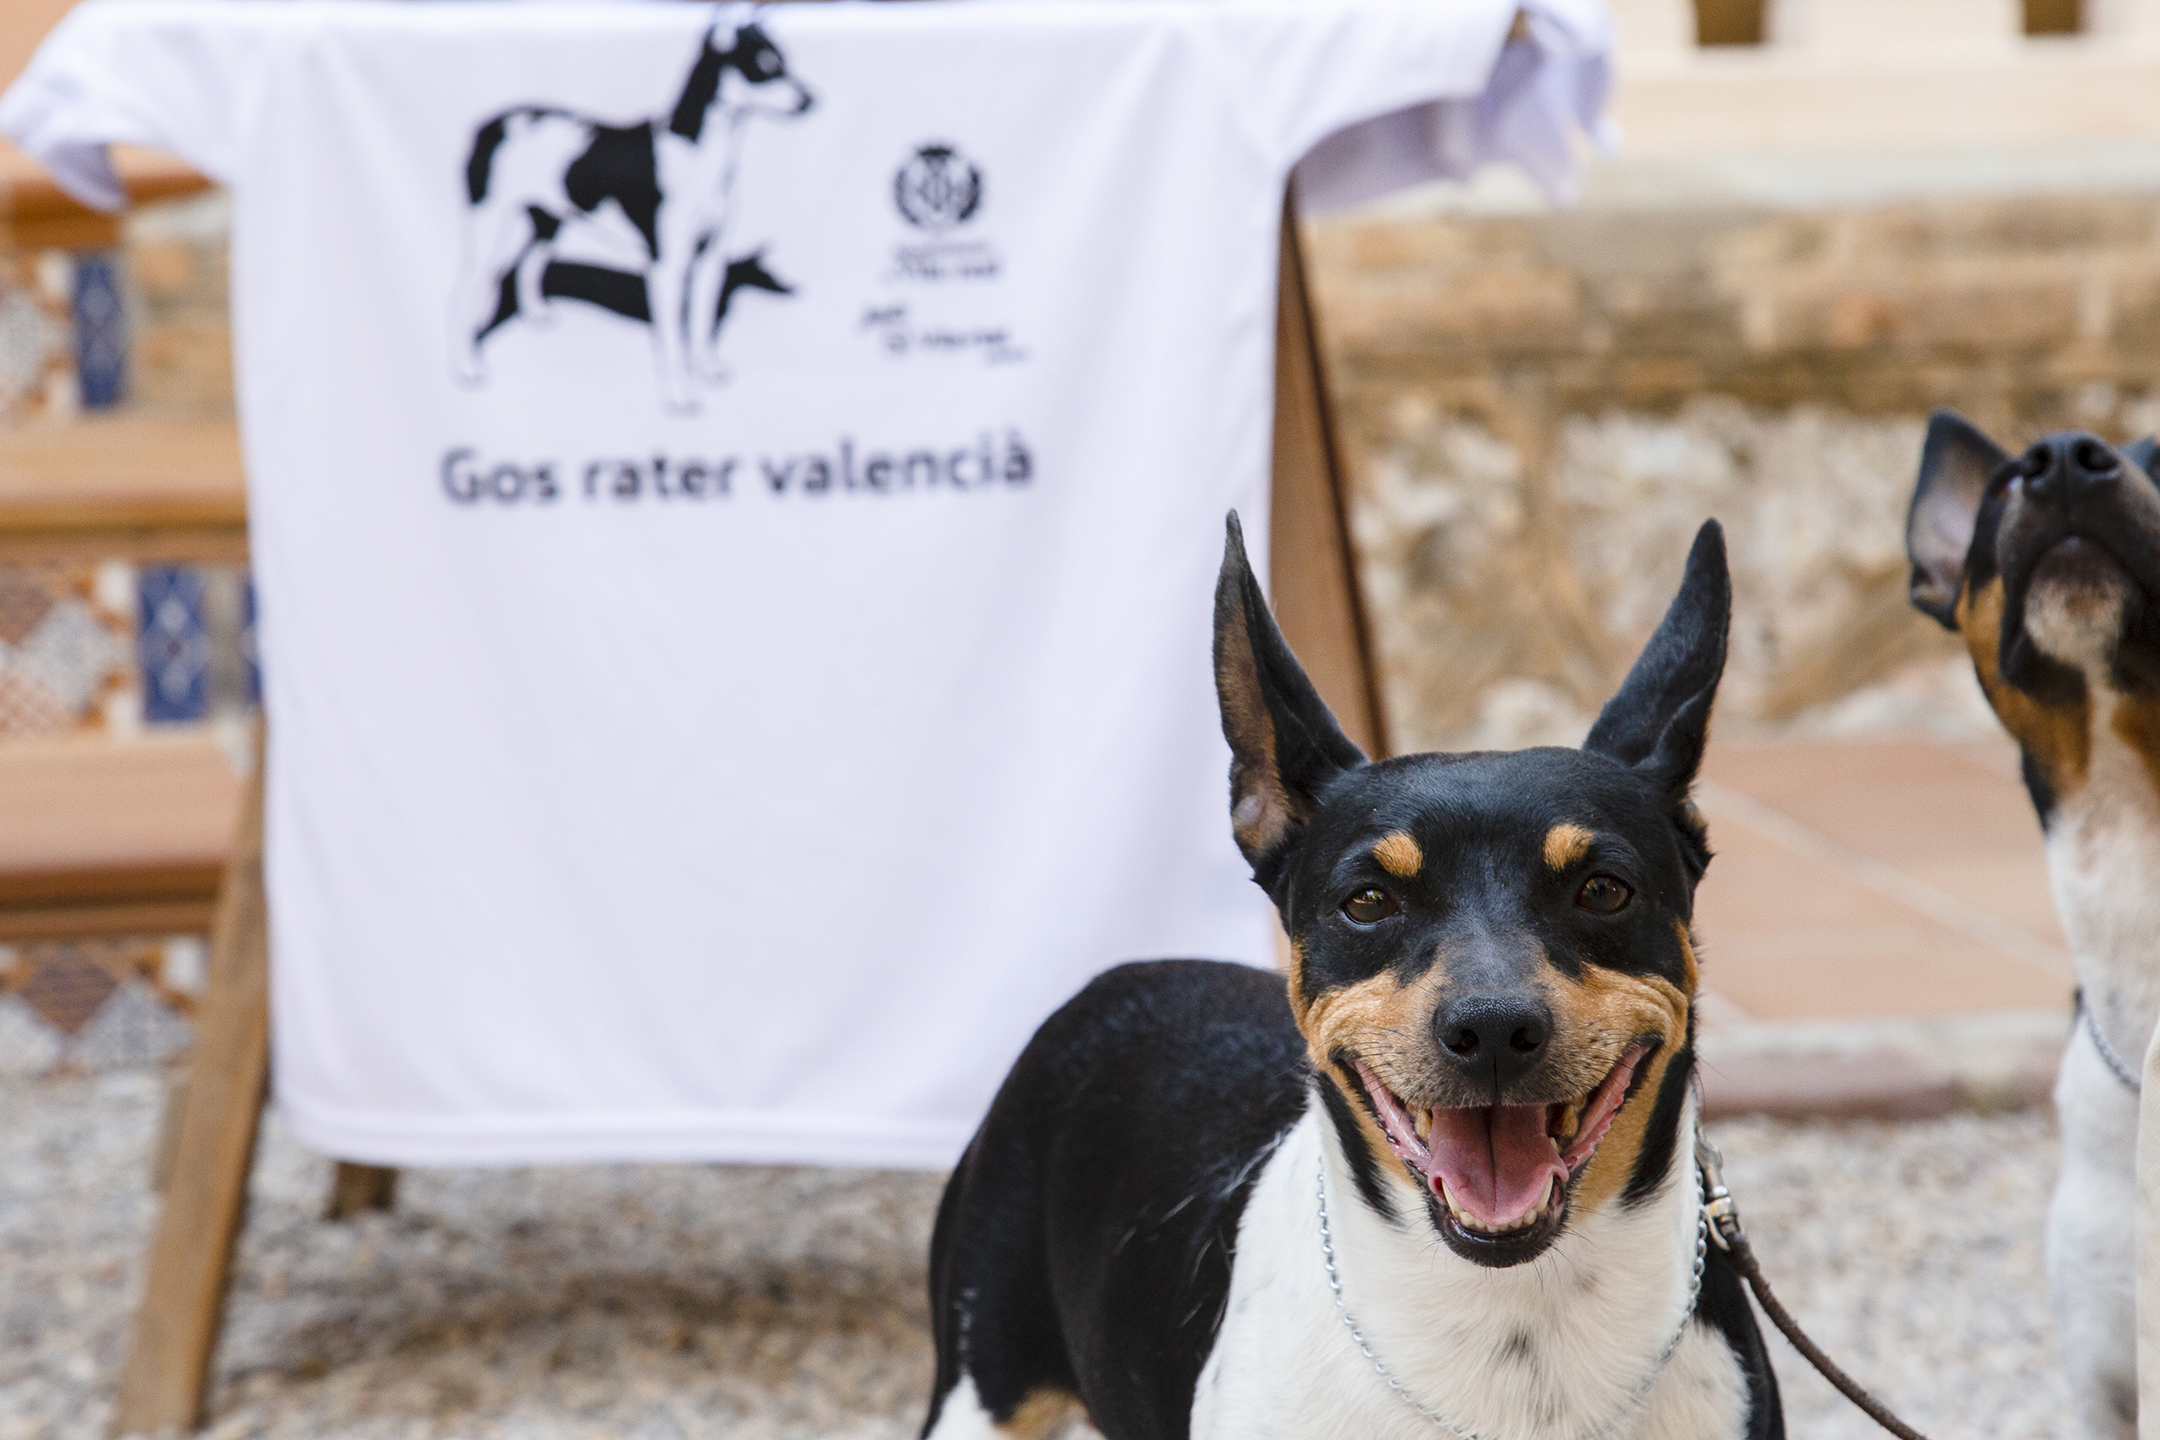 Vila-real distingue la labor para la defensa y pervivencia del perro ratonero valenciano con motivo de su reconocimiento como raza internacional